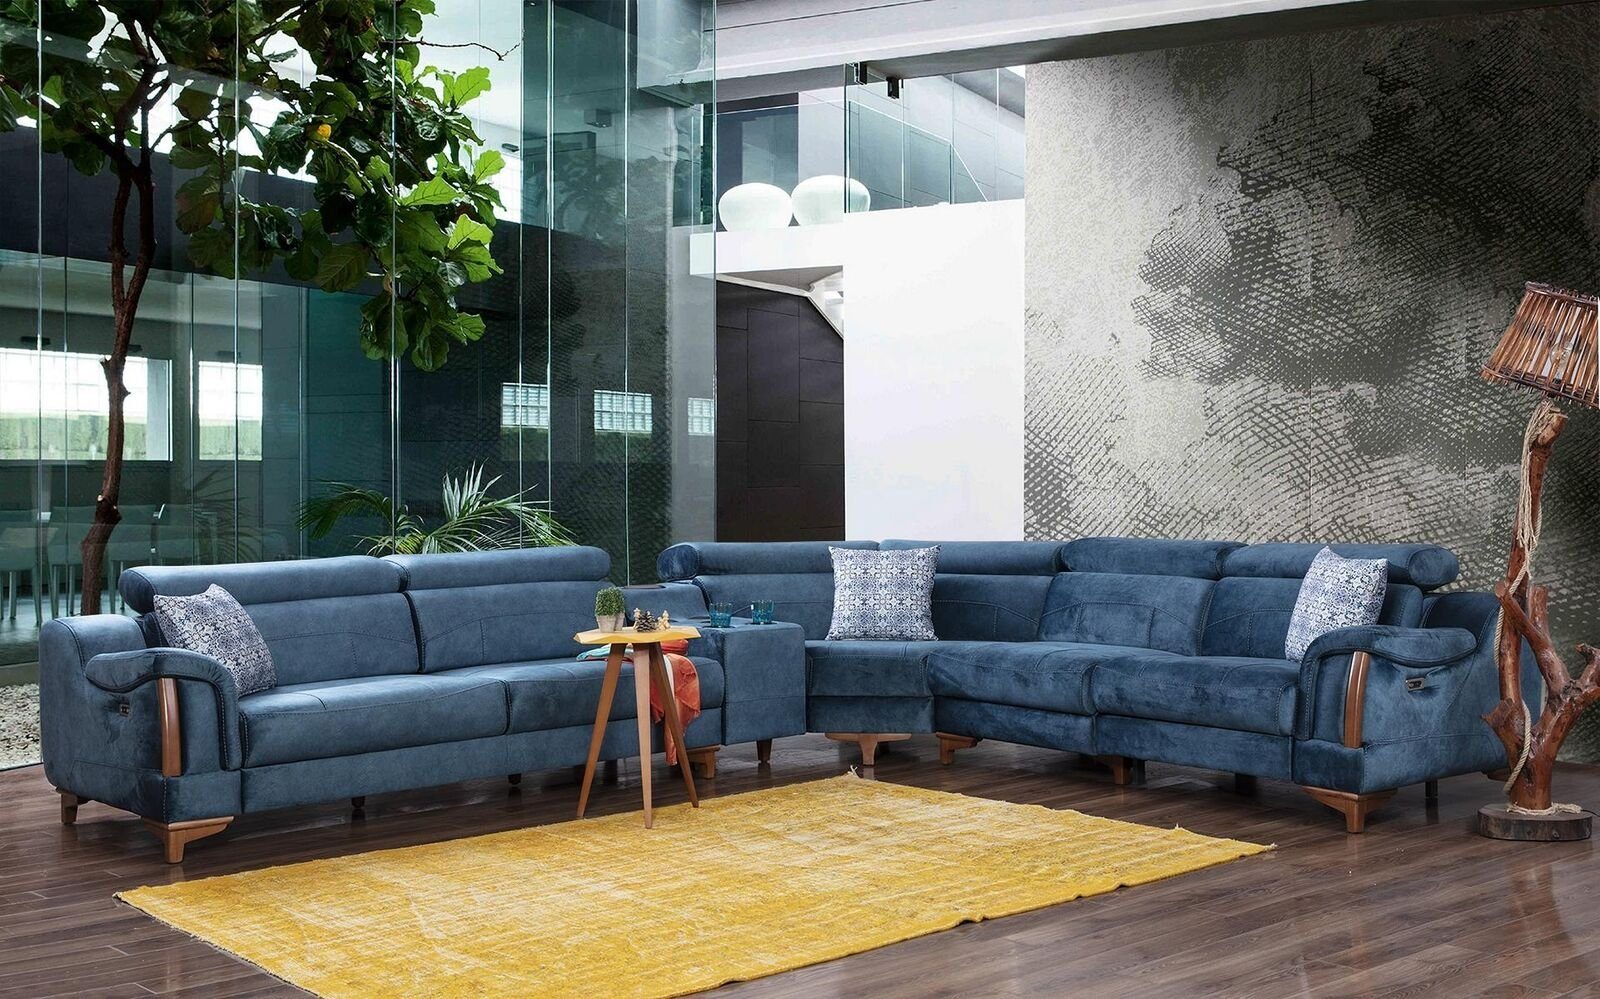 Ecksofa Europa Teile, Möbel Sofa Modern Wohnzimmer in Made Design L-Form Couch Textil, Ecksofa 6 JVmoebel